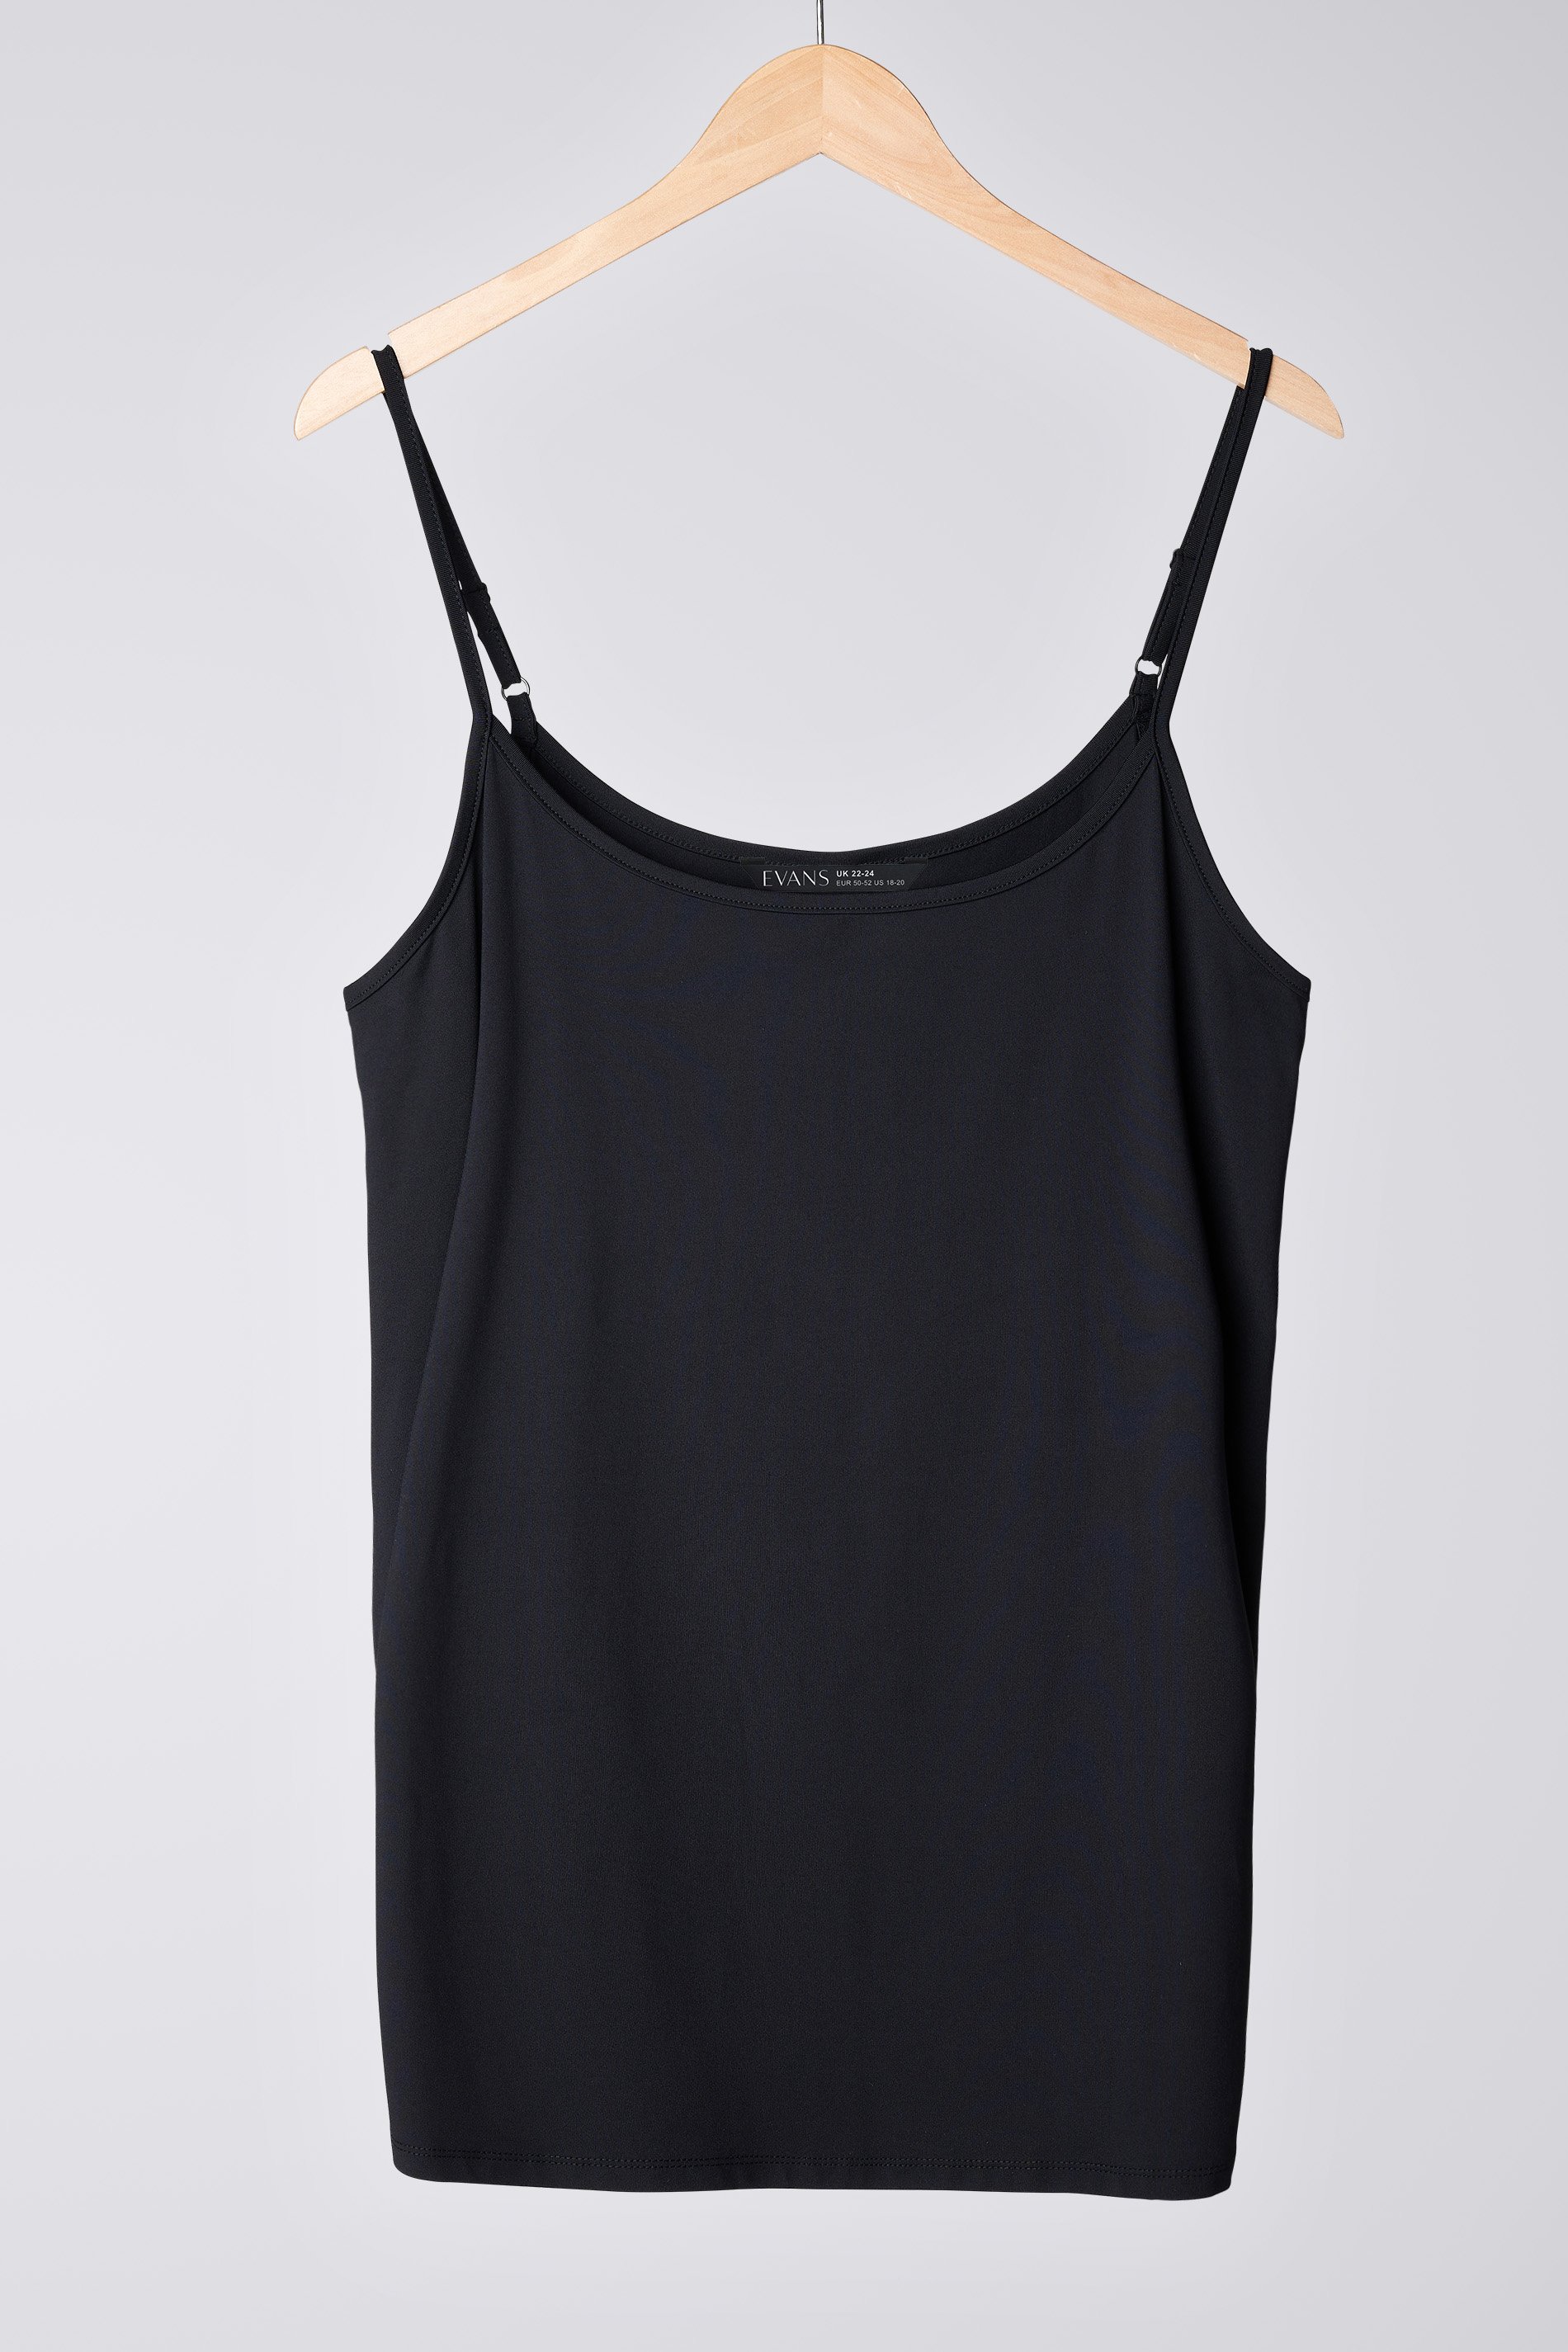 Plus Size Black Cami Vest Top